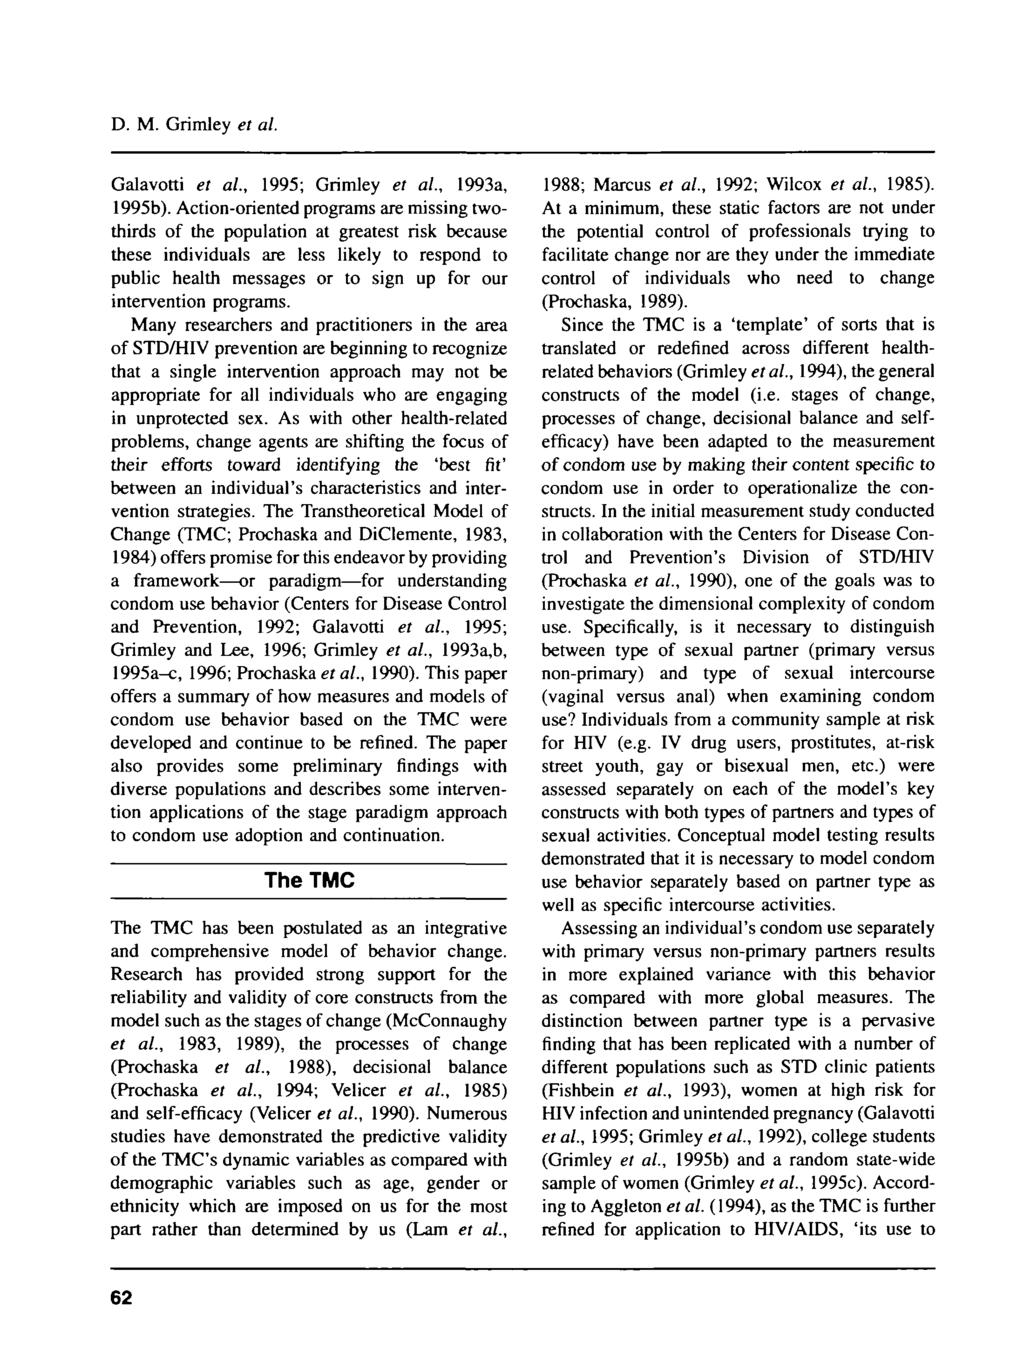 D. M. Grimley et al. Galavotti et al, 1995; Grimley et al, 1993a, 1995b).